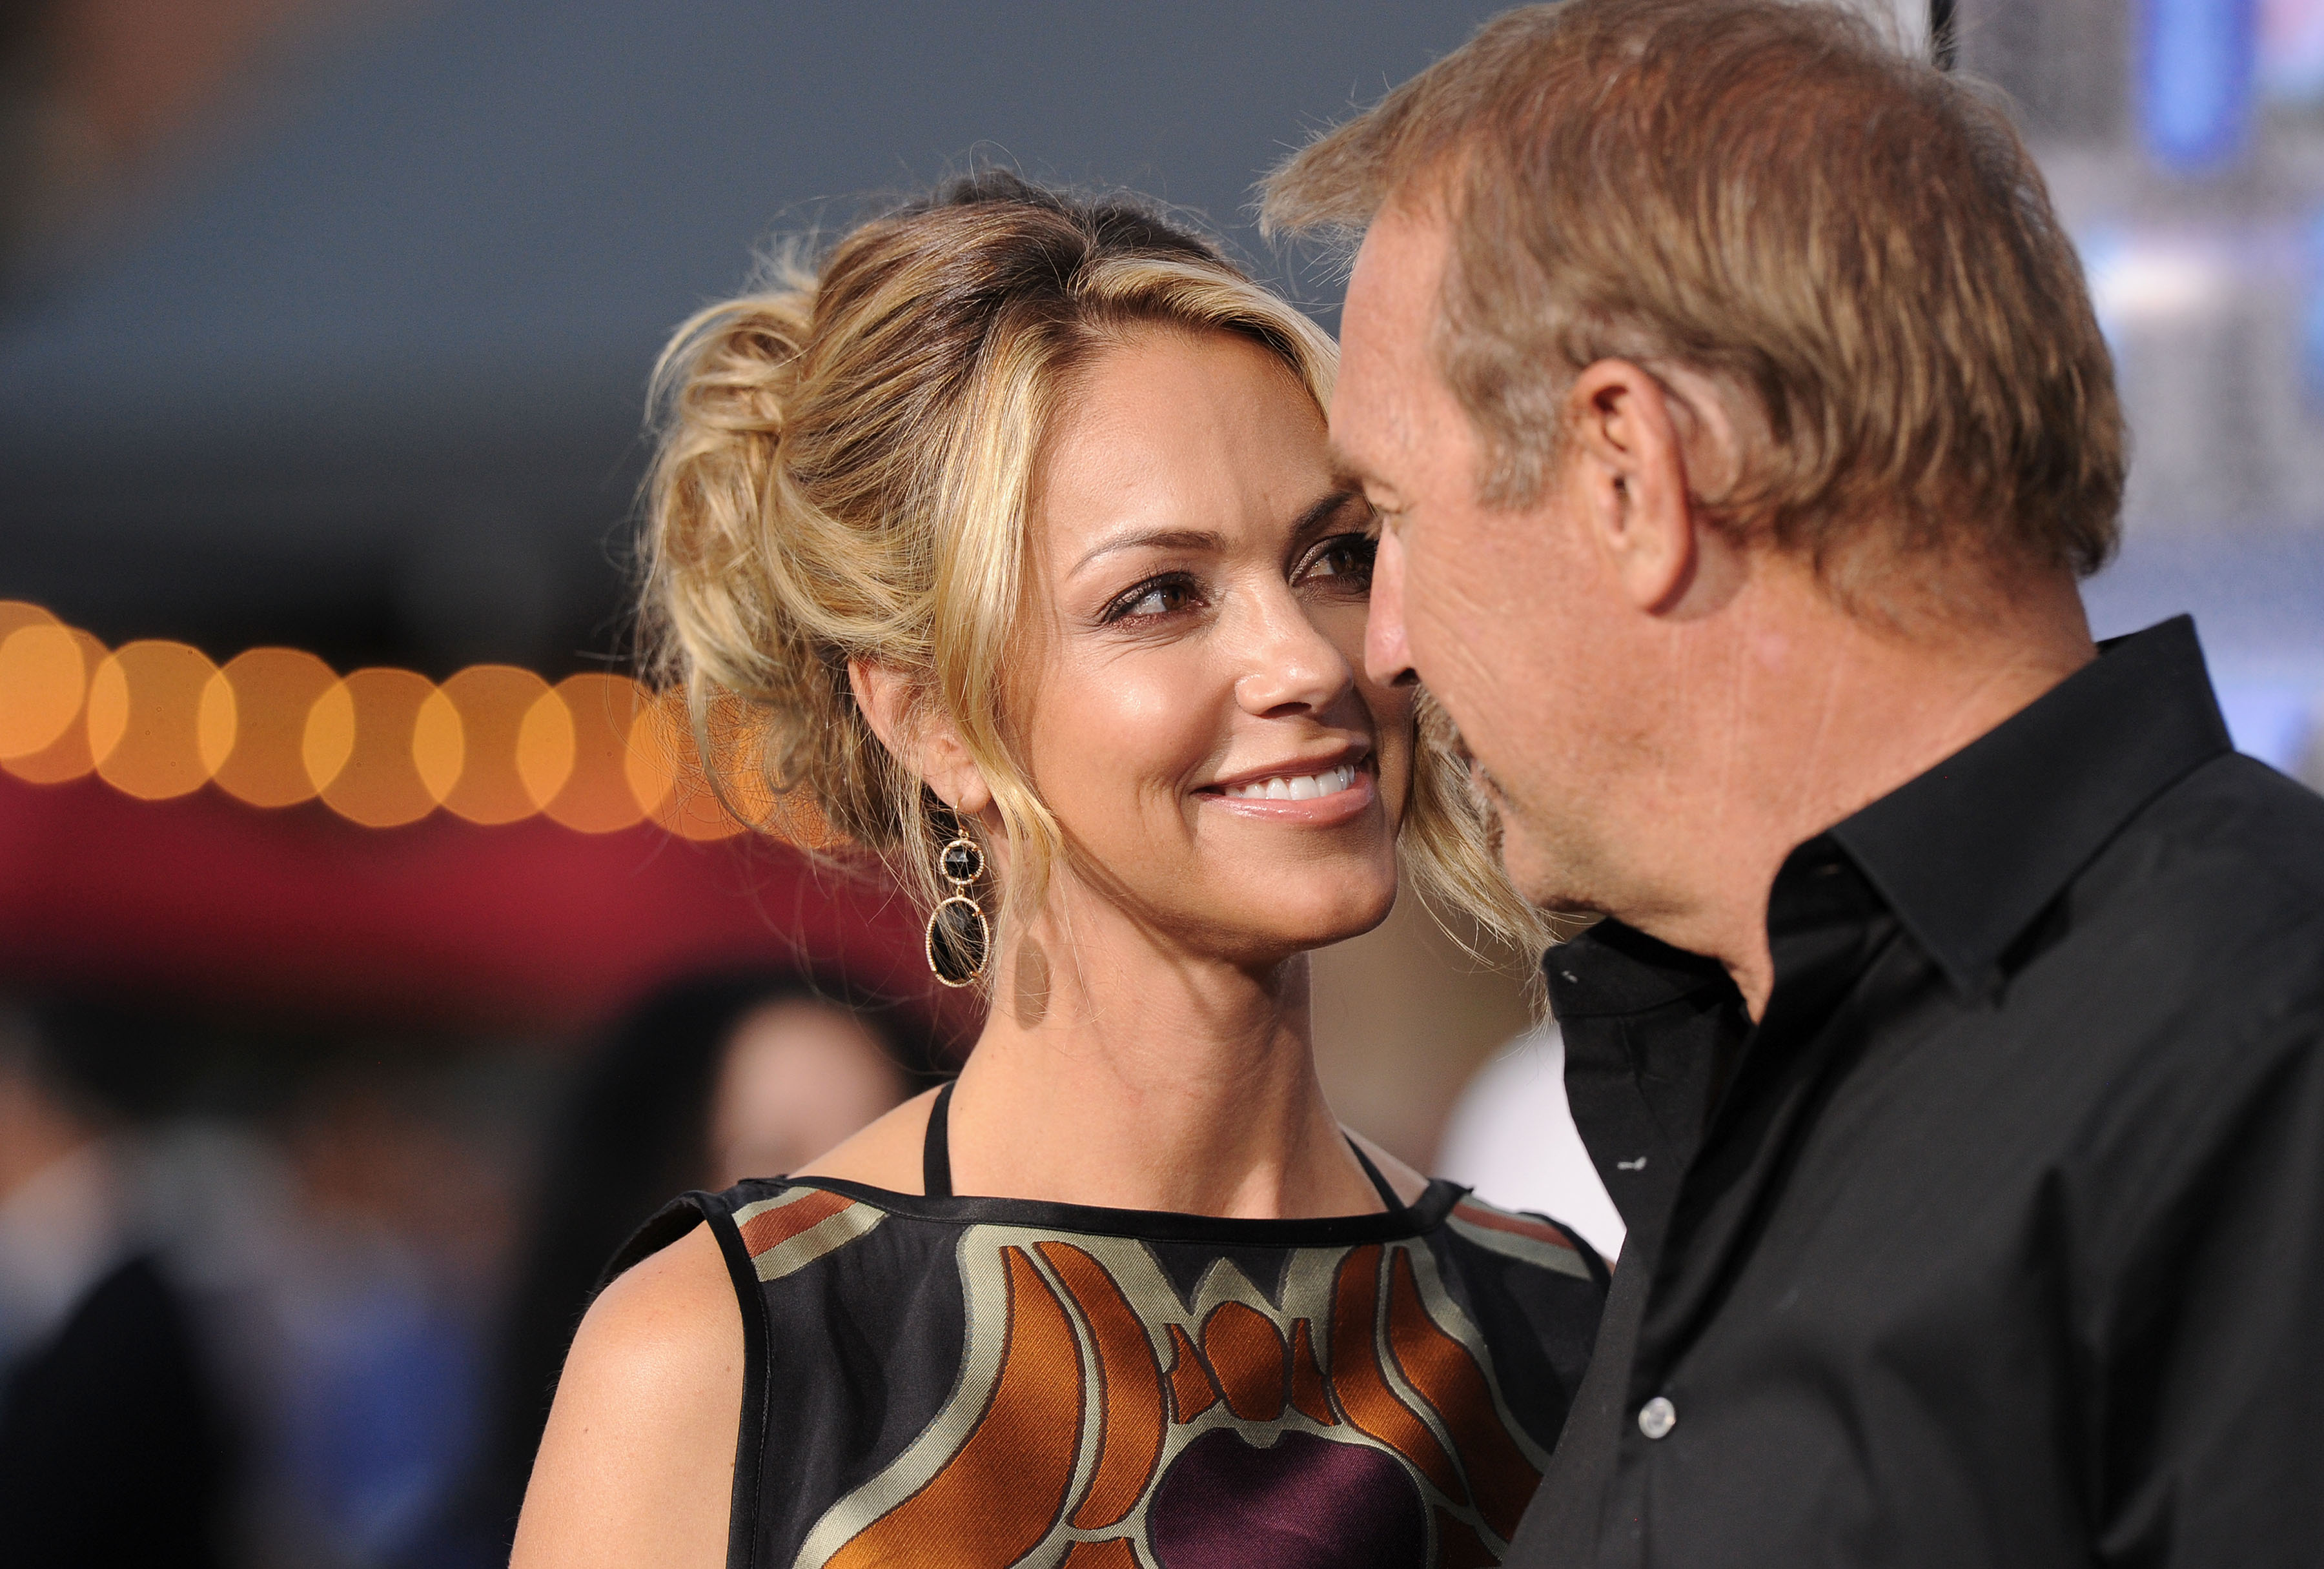 Kevin Costner and Christine Baumgartner on April 7, 2014 in Westwood, California | Source: Getty Images